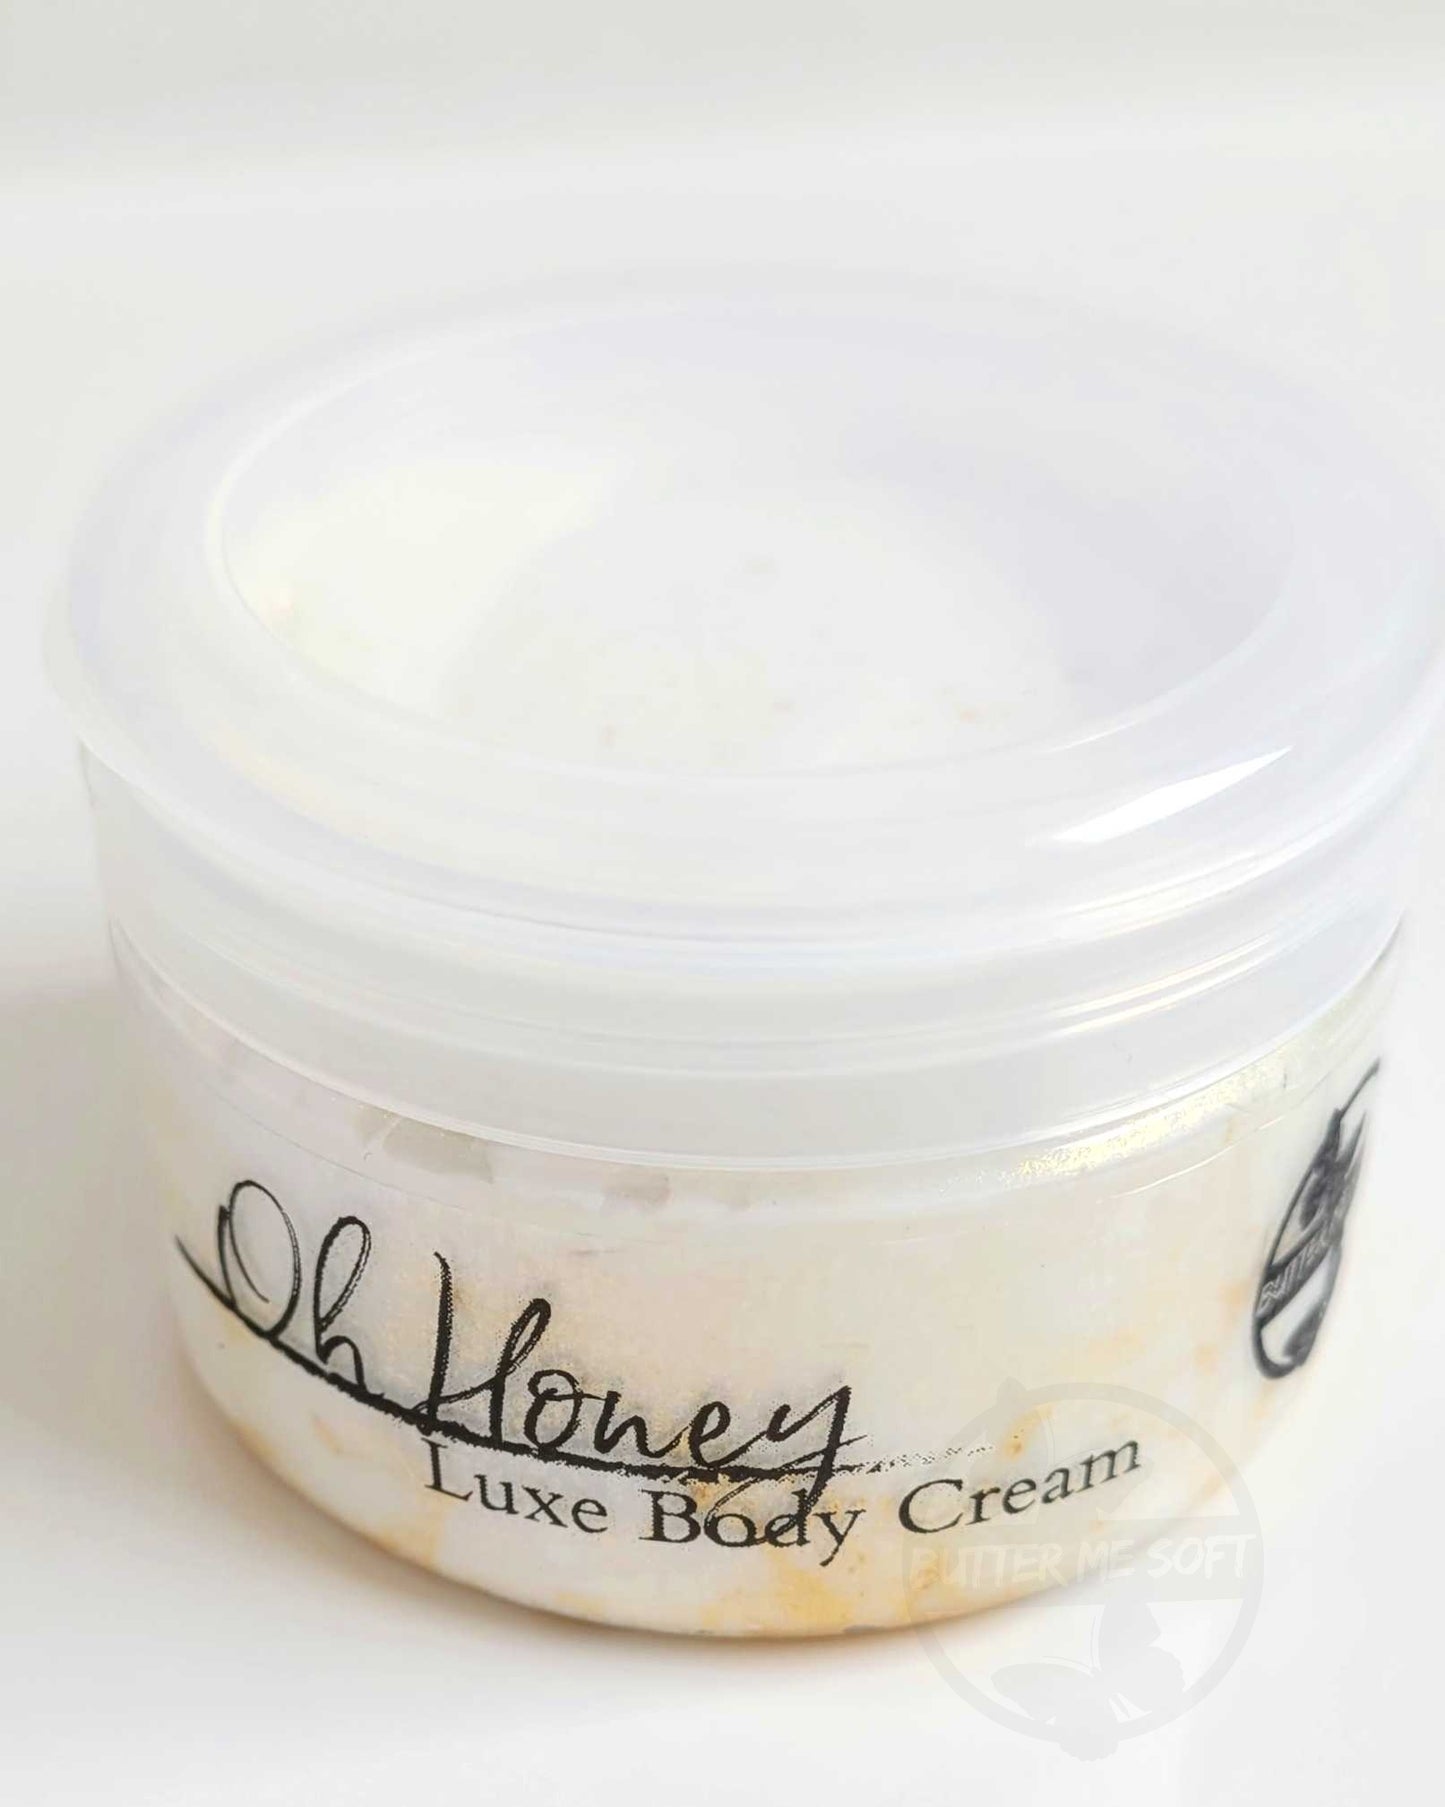 Oh Honey Luxe Body Cream